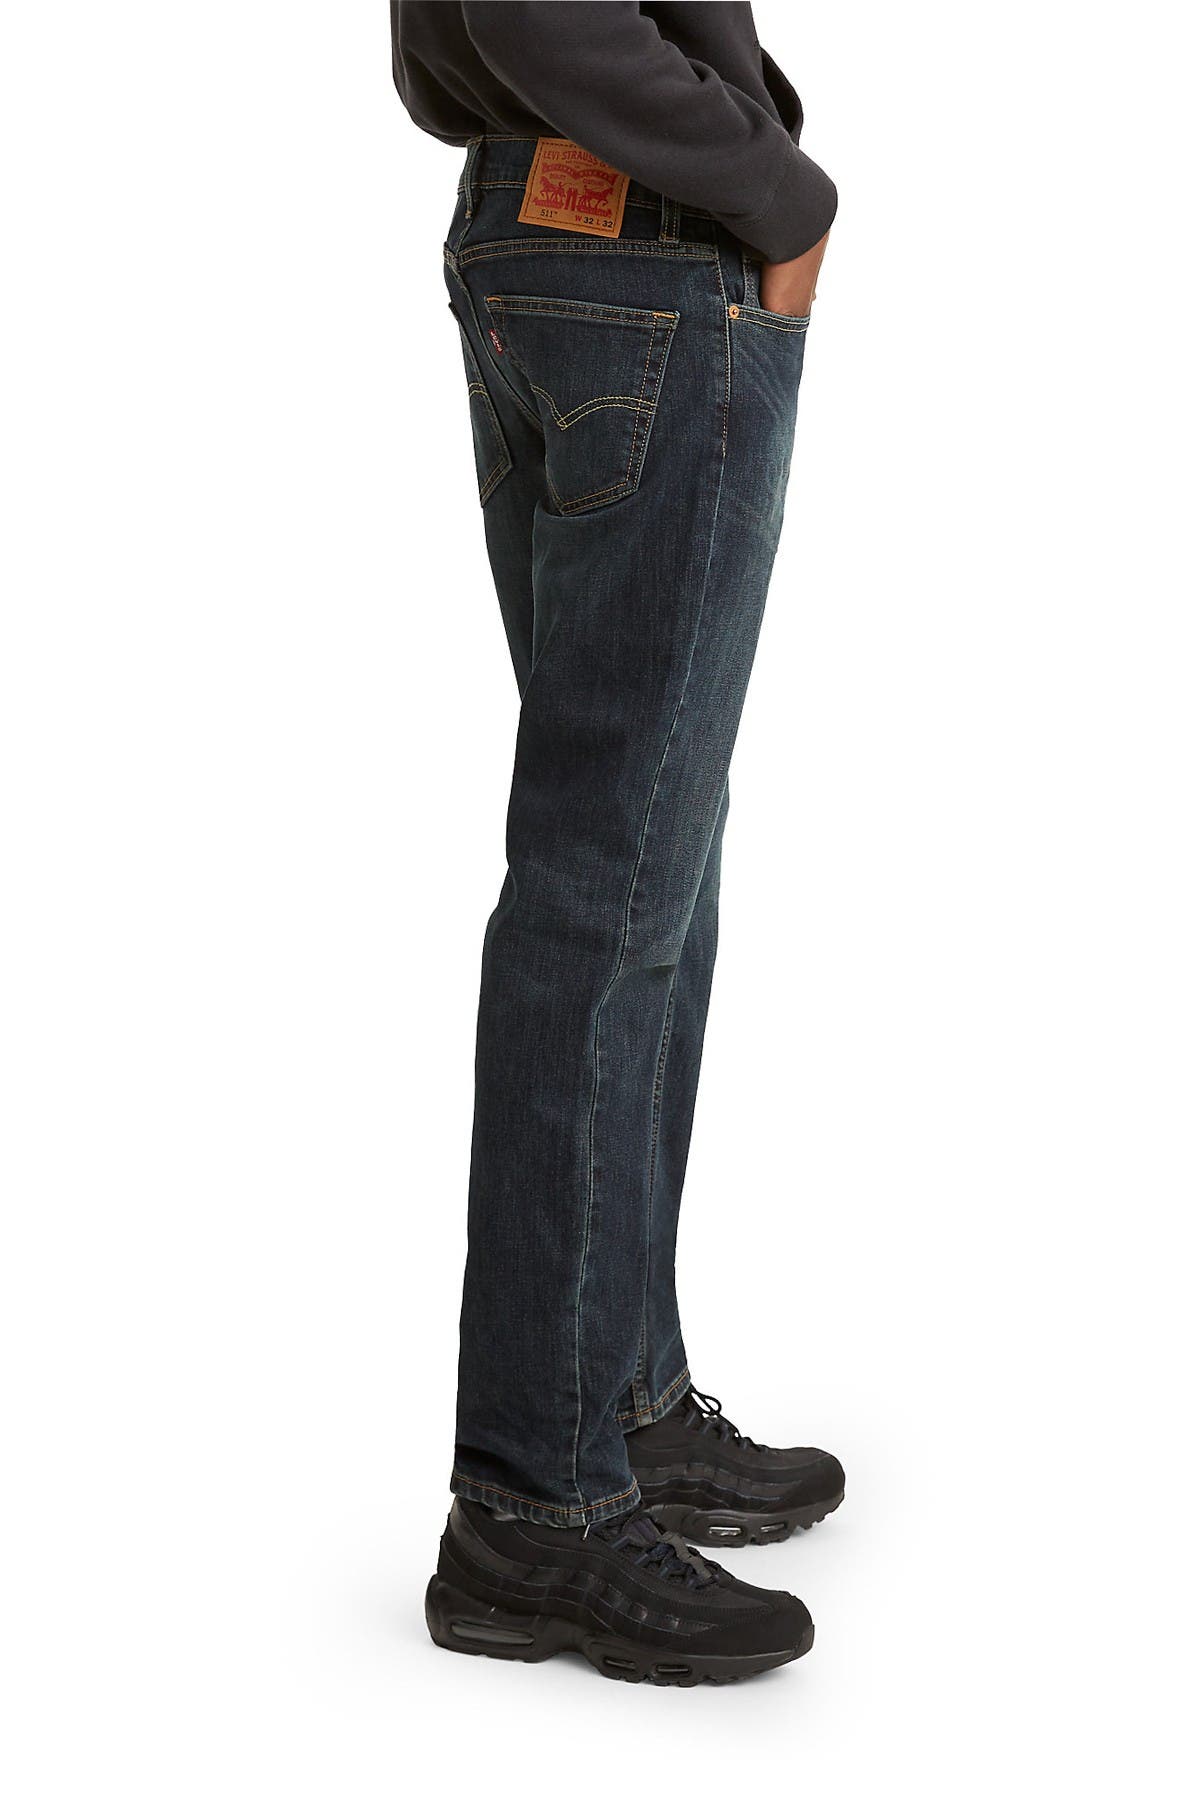 levi's 511 sequoia men's slim jeans